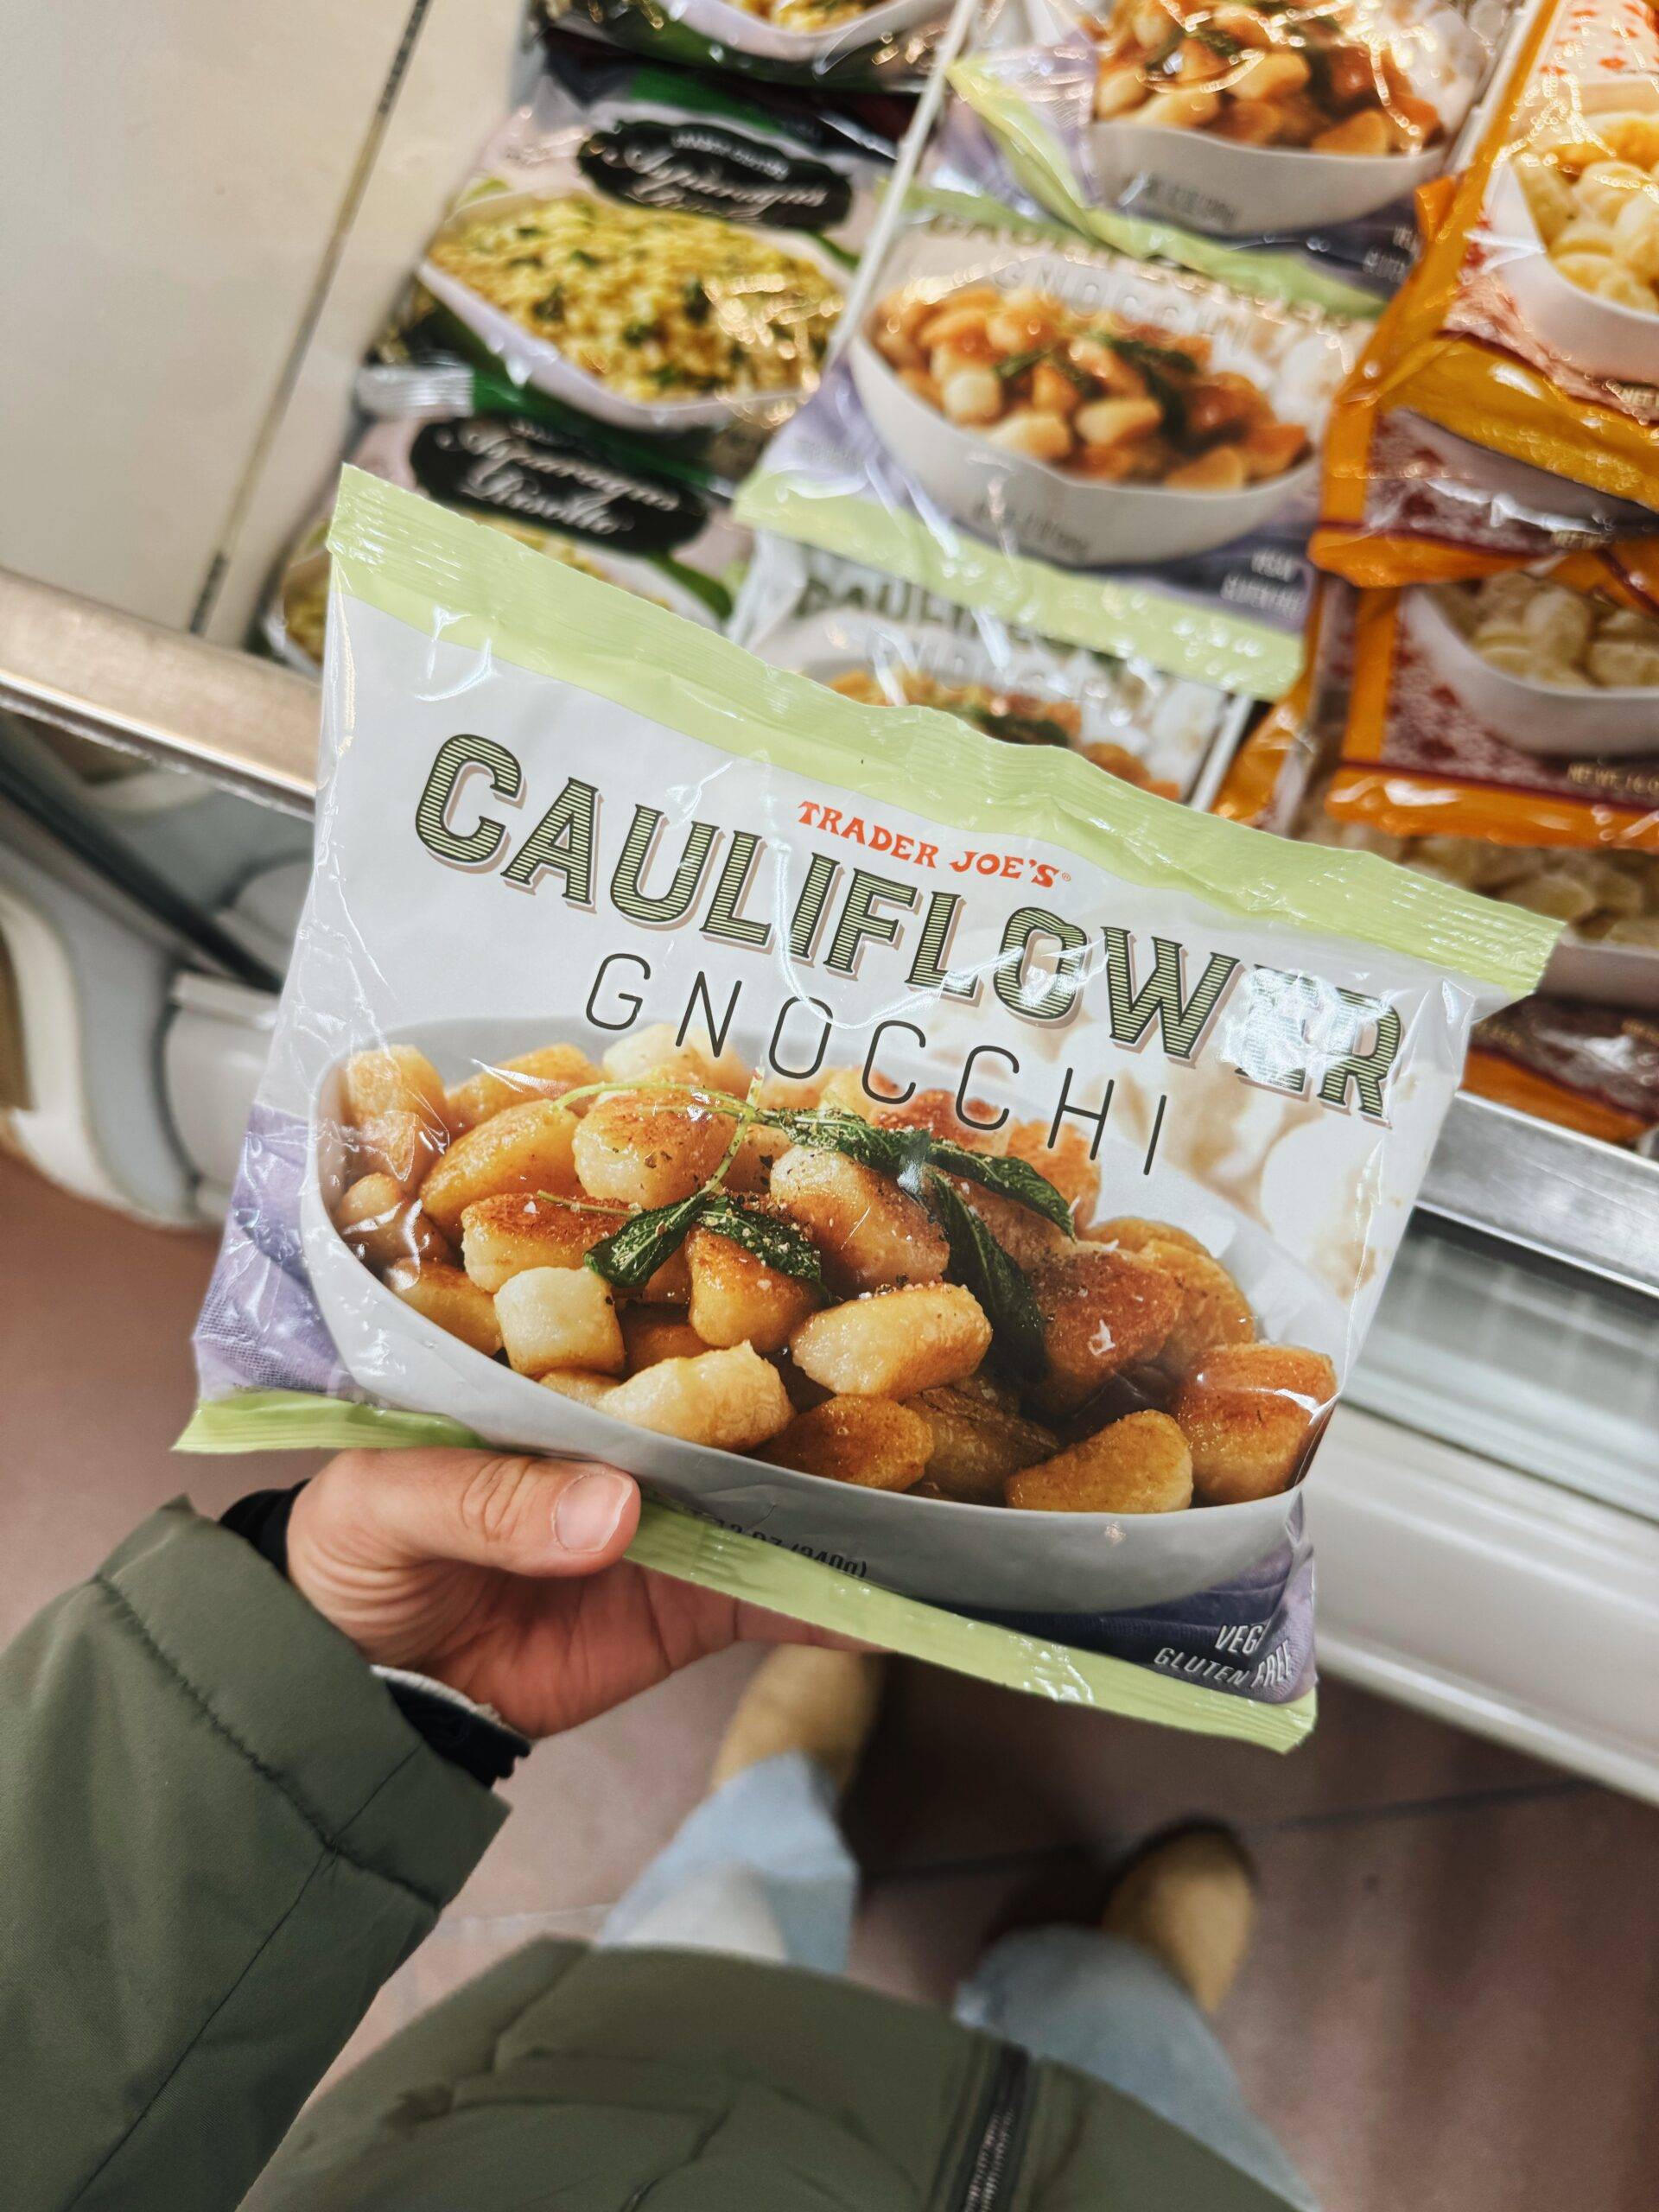 Package of Trader Joe's cauliflower gnocchi.